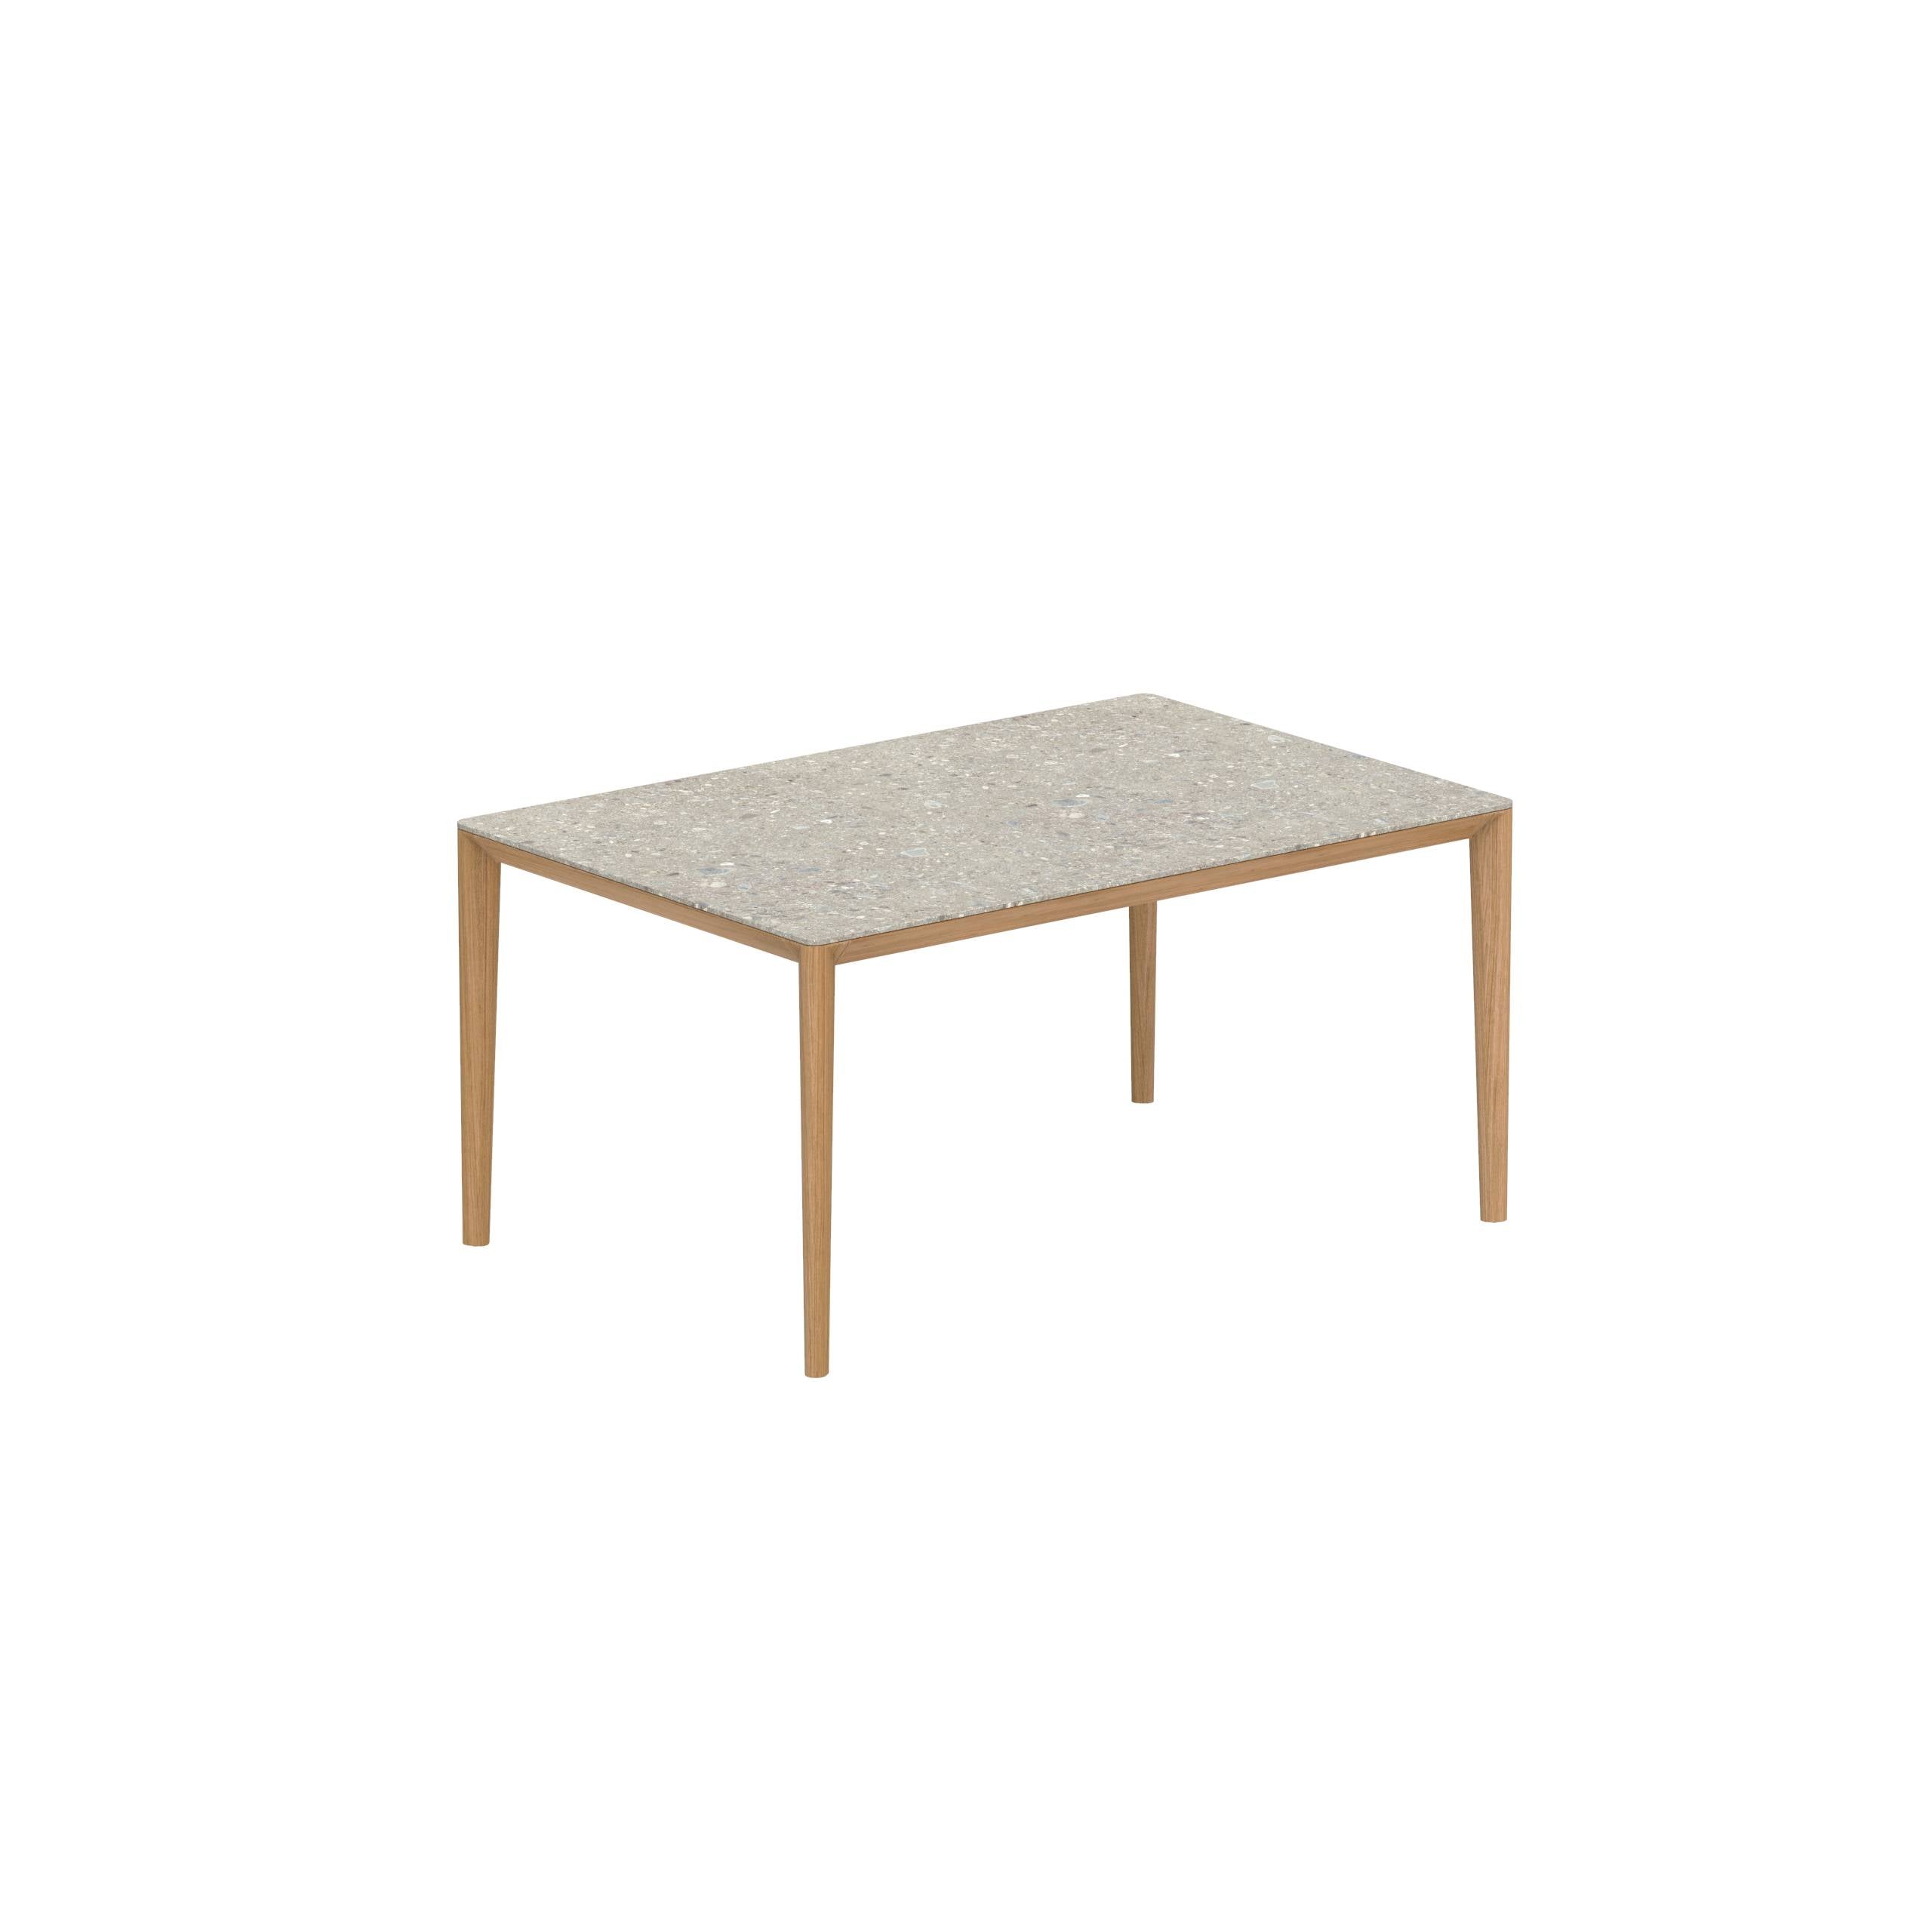 U-Nite Table 150x100cm Teak With Ceramic Tabletop Ceppo Dolomitica